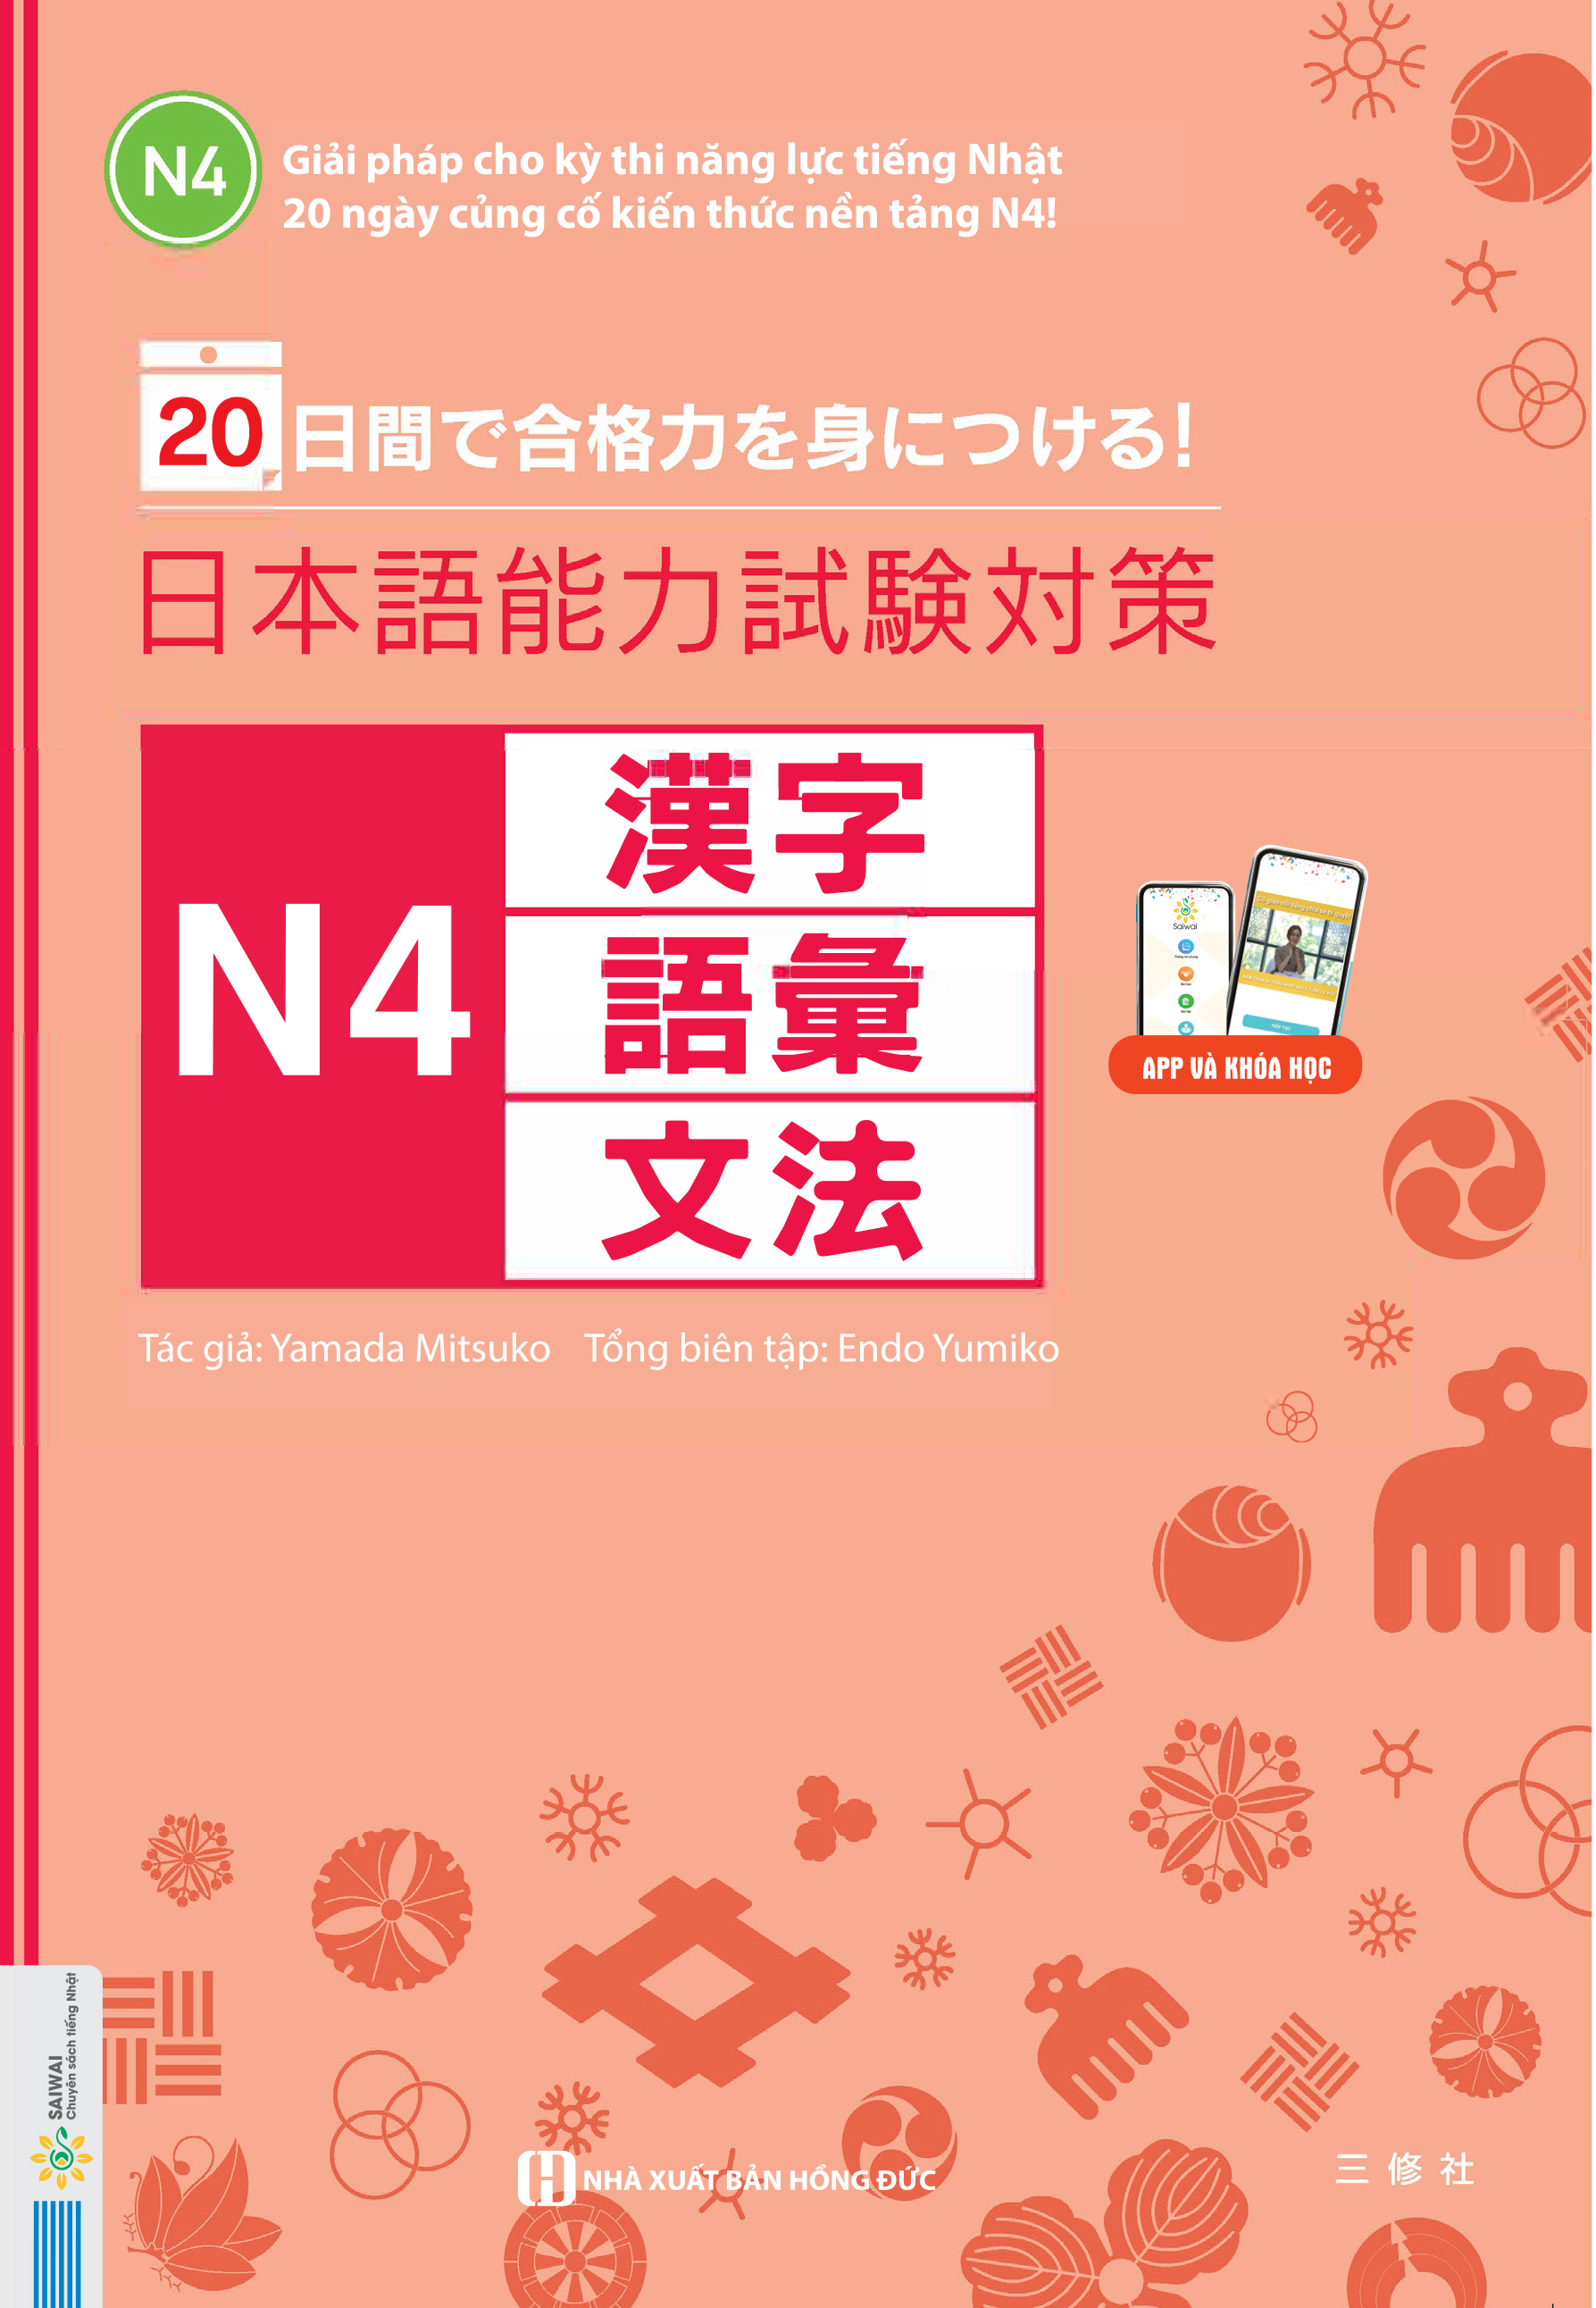 20 Ngày Củng Cố Kiến Thức Nền Tảng N4 - Giải Pháp Cho Kỳ Thi Năng Lực Tiếng Nhật (Học Cùng App Mcbooks) - MinhAnBooks